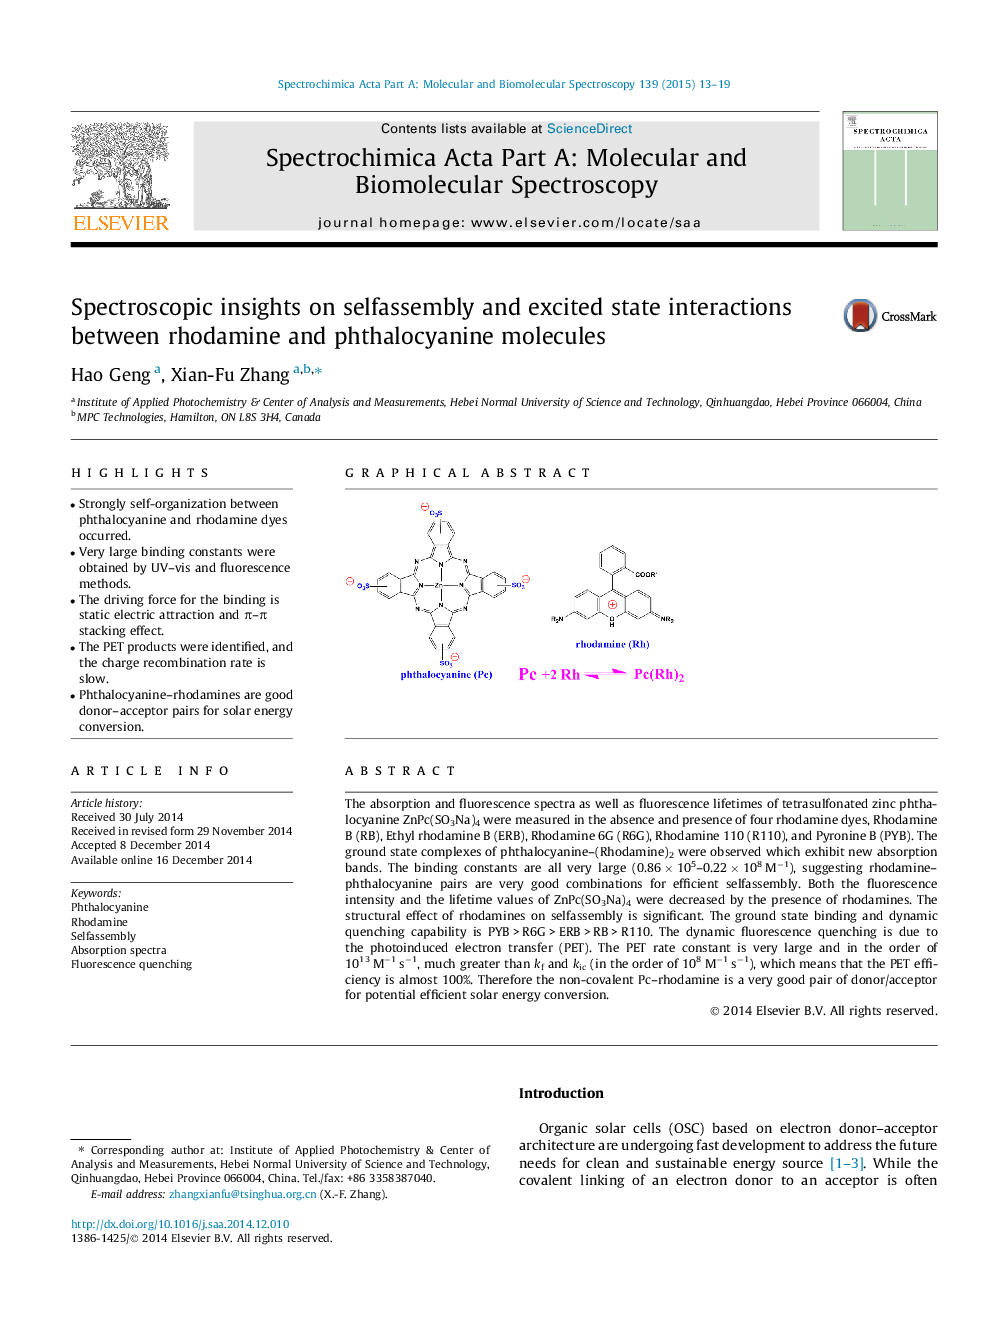 بینش های اسپکتروسکوپی در مورد خودآموزی و تعامل حالت های هیجانی بین مولکول های رودامین و فتالوسیانین 